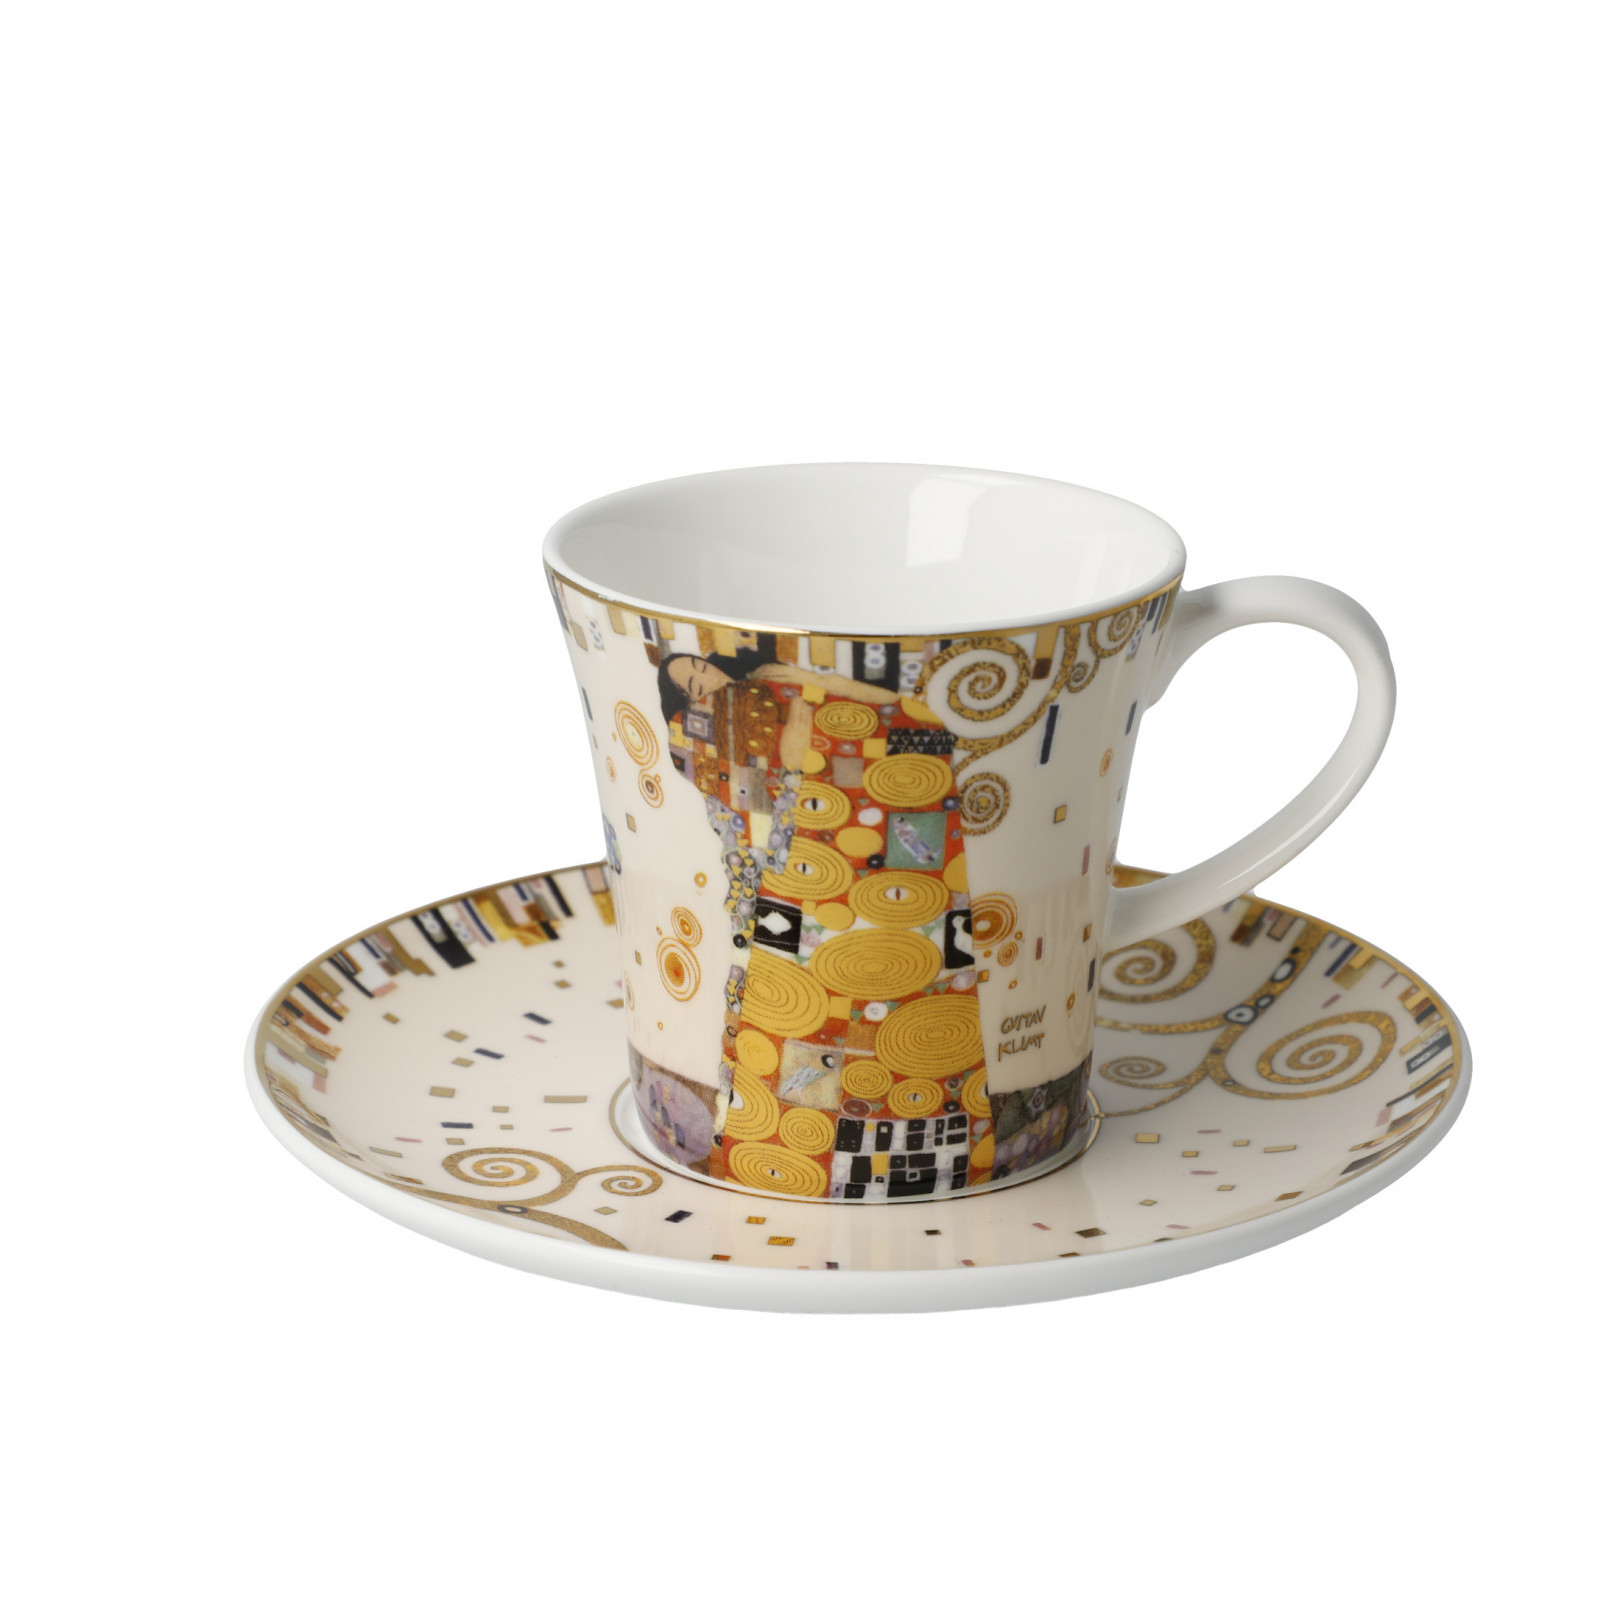 Filiżanka do kawy G.Klimt - Spełnienie - Goebel